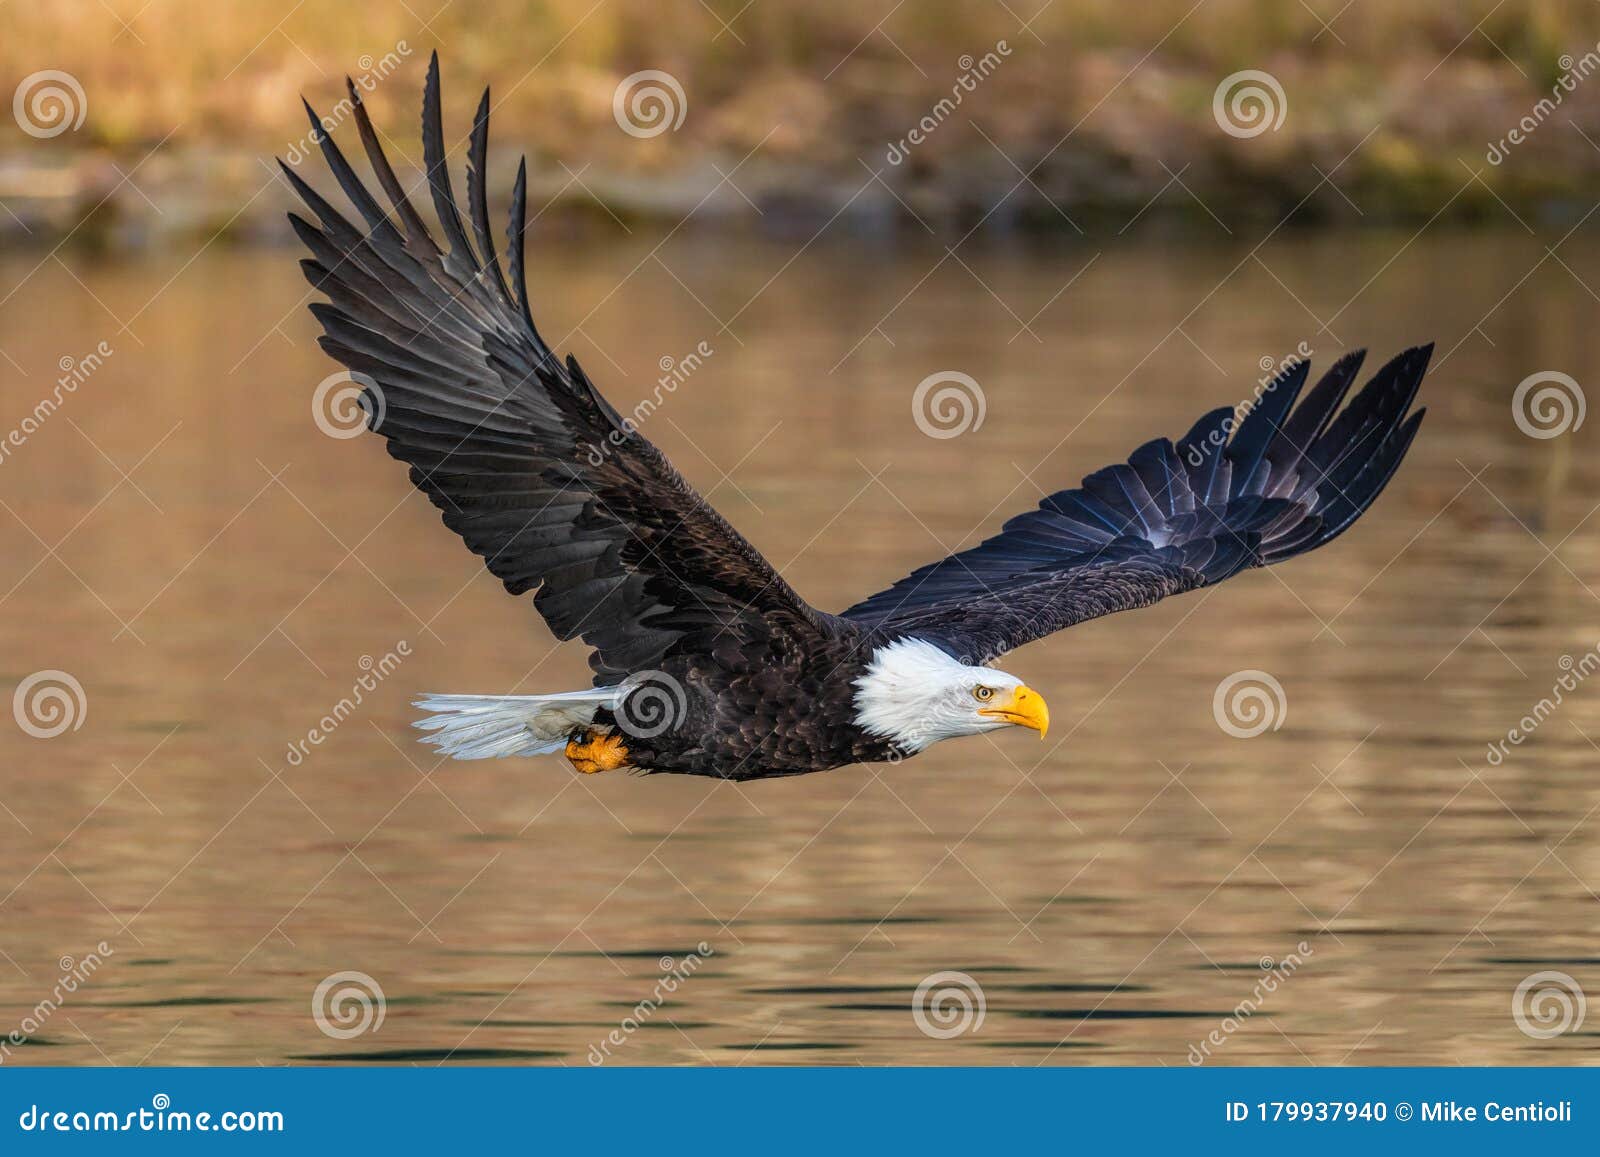 Águila calva volando foto de archivo. Imagen de americano - 179937940